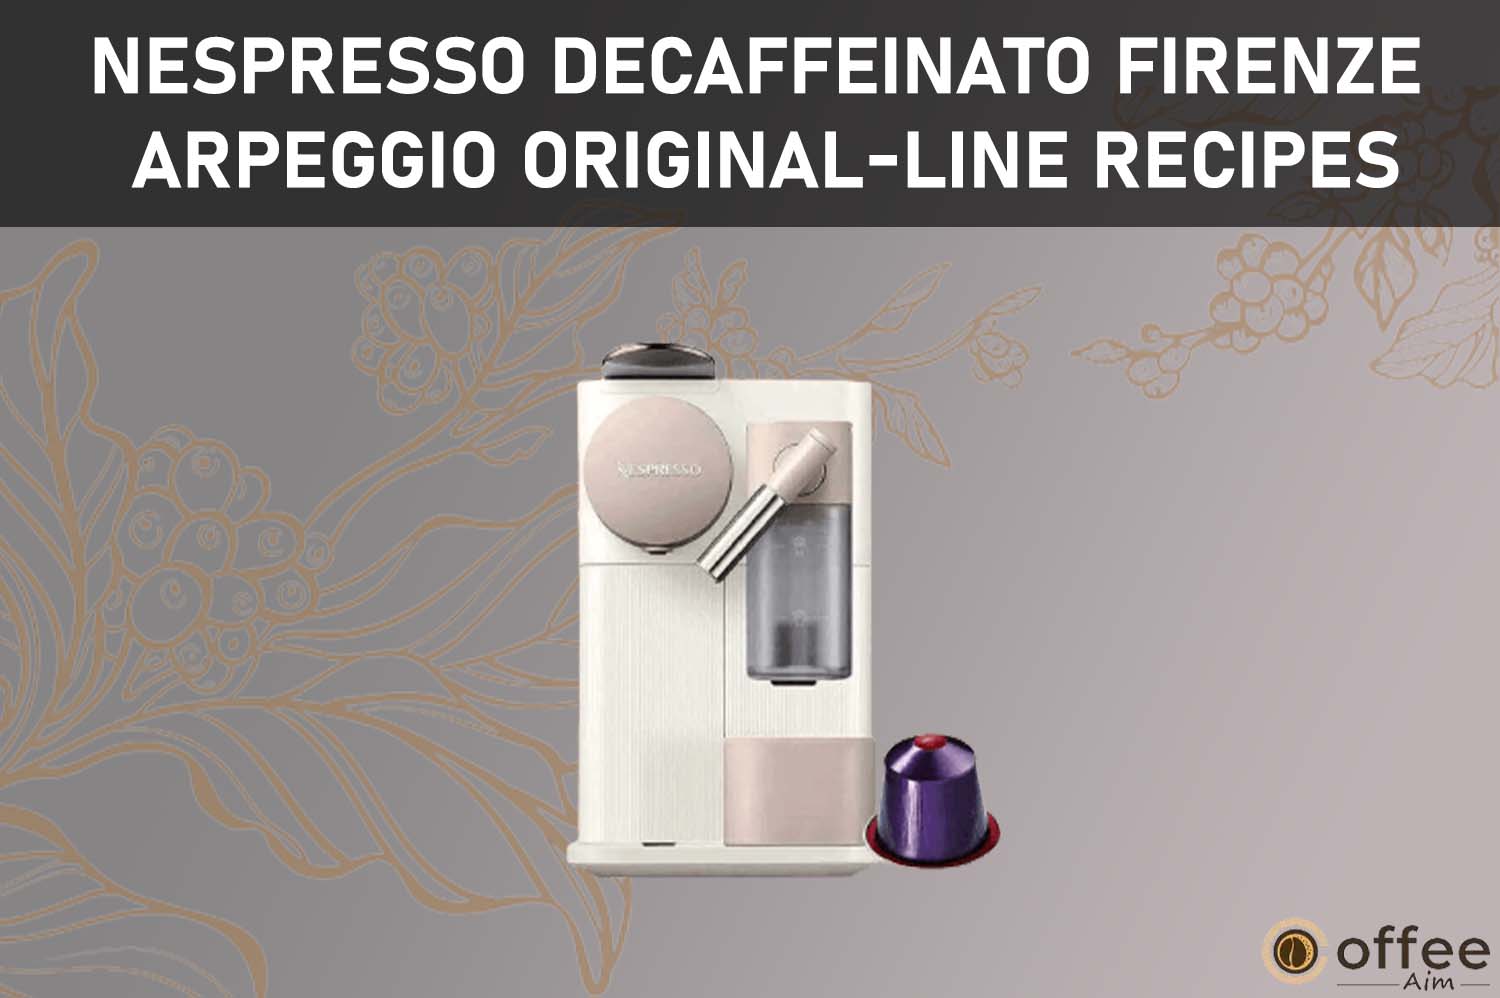 Featured image for the article "Nespresso Decaffeinato Firenze Arpeggio Original-Line Recipes"